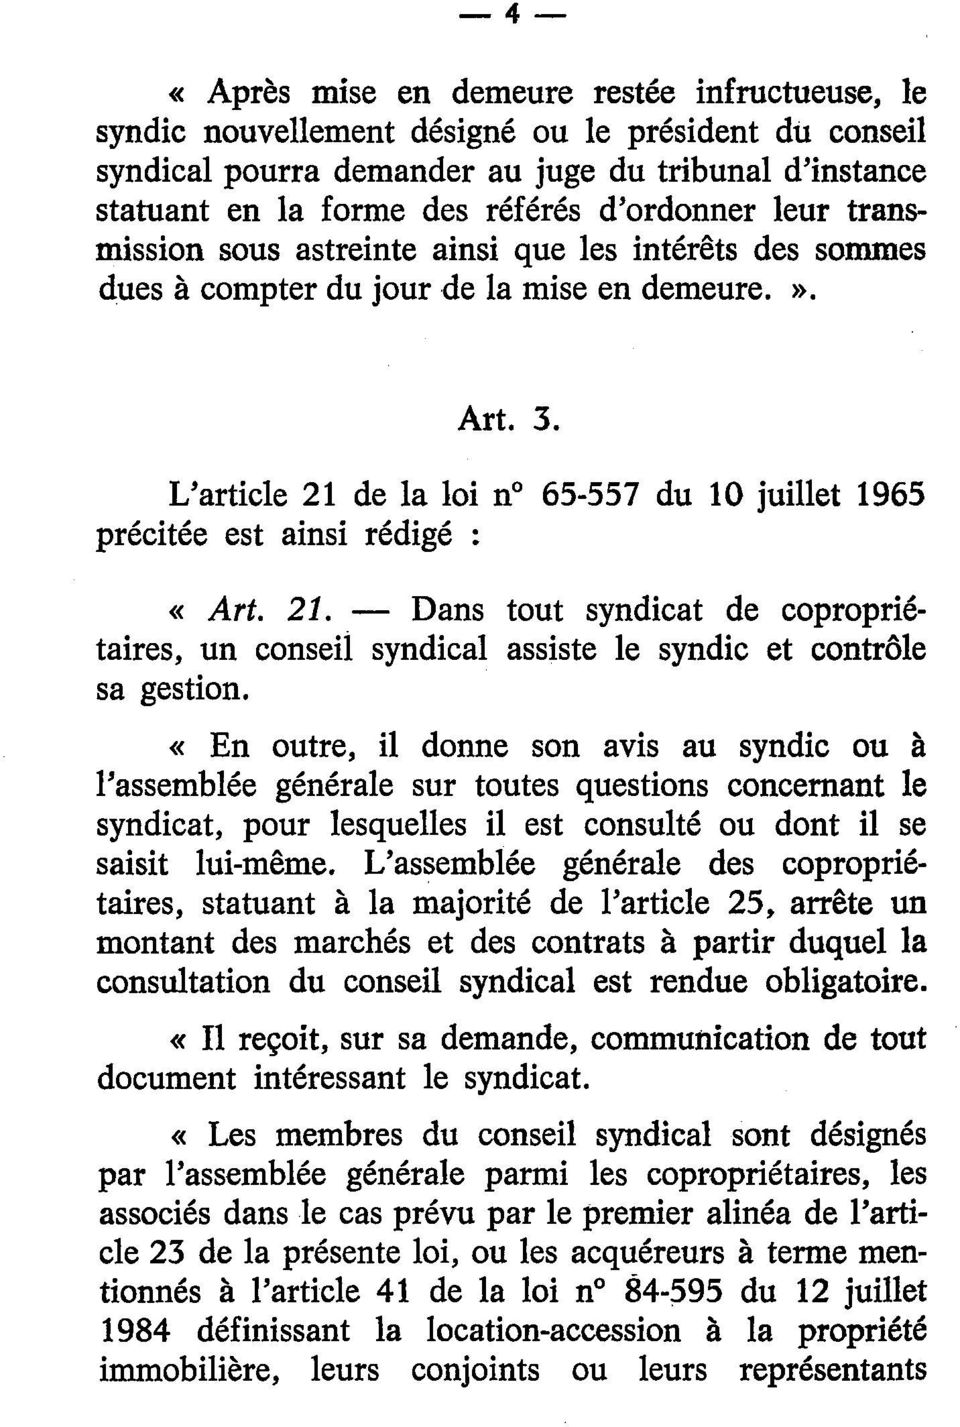 L'article 21 de la loi n 65-557 du 10 juillet 1965 précitée est ainsi rédigé : «Art. 21. Dans tout syndicat de copropriétaires, un conseil syndical assiste le syndic et contrôle sa gestion.